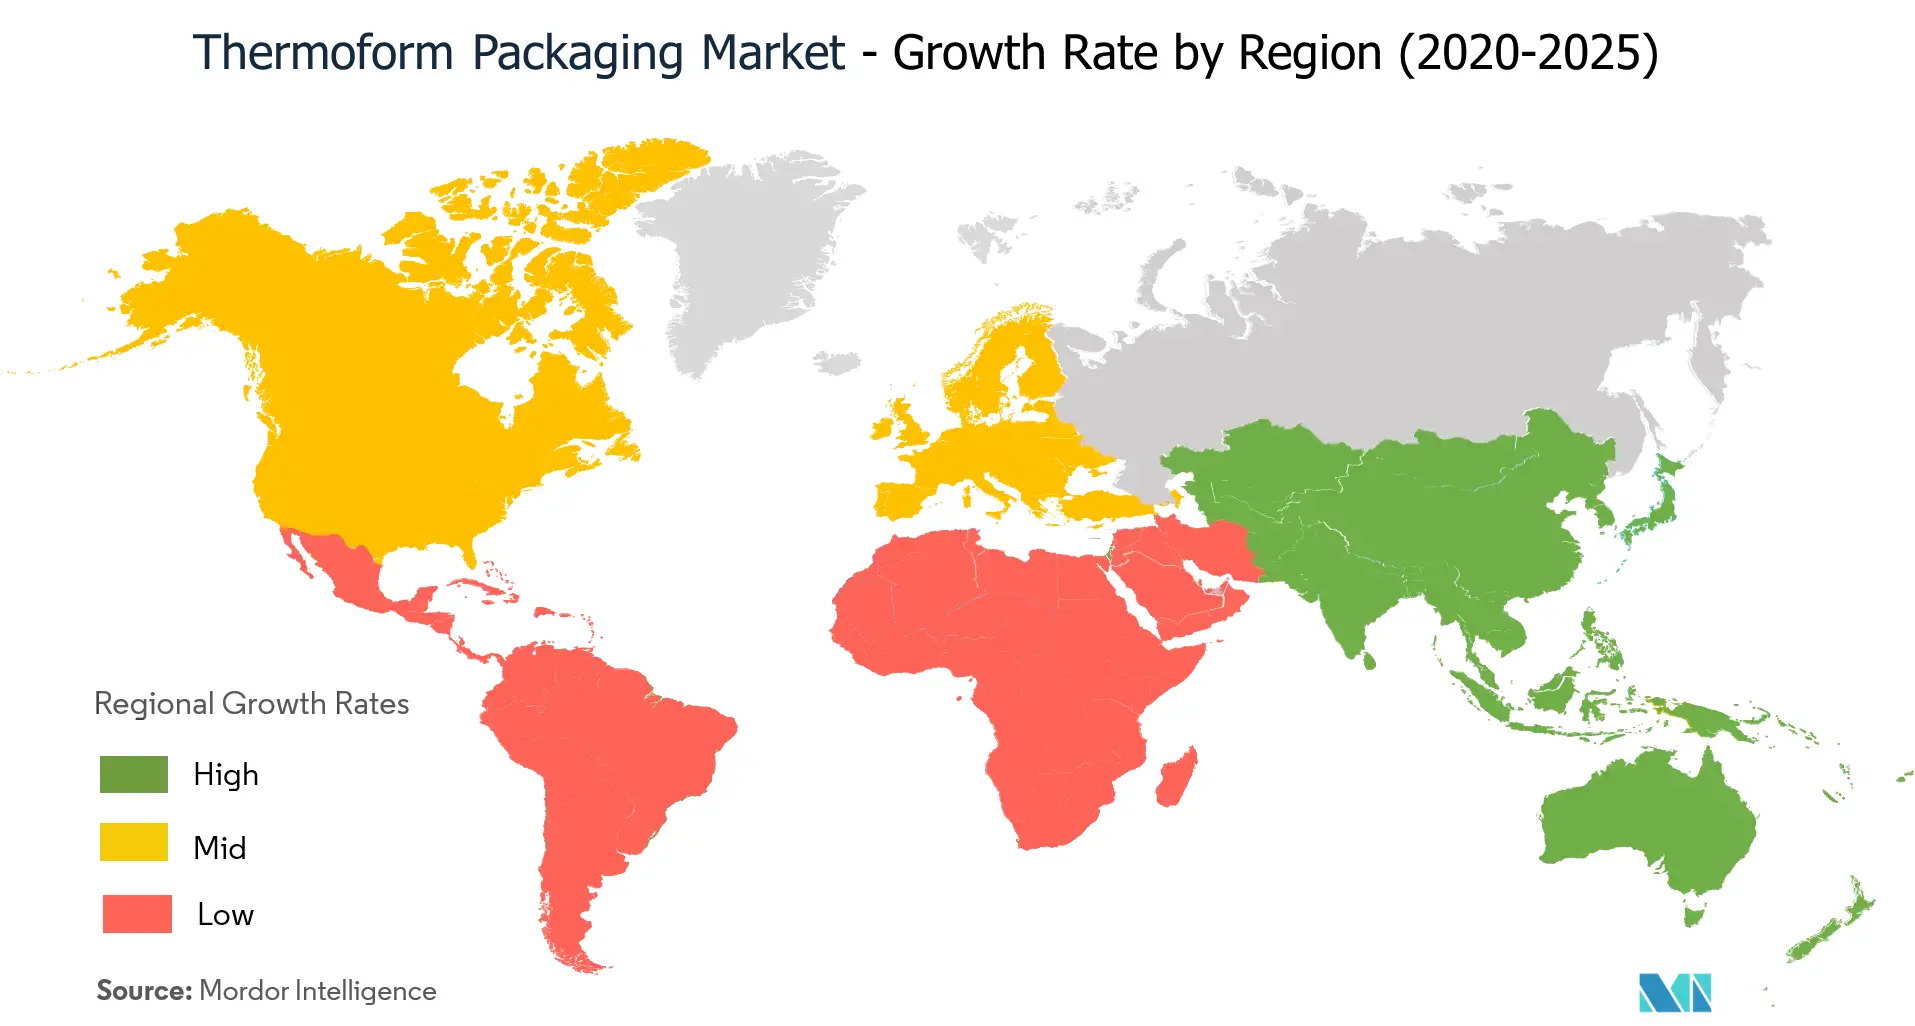 Markt für Thermoformverpackungen - Wachstumsrate nach Regionen (2020 - 2025)